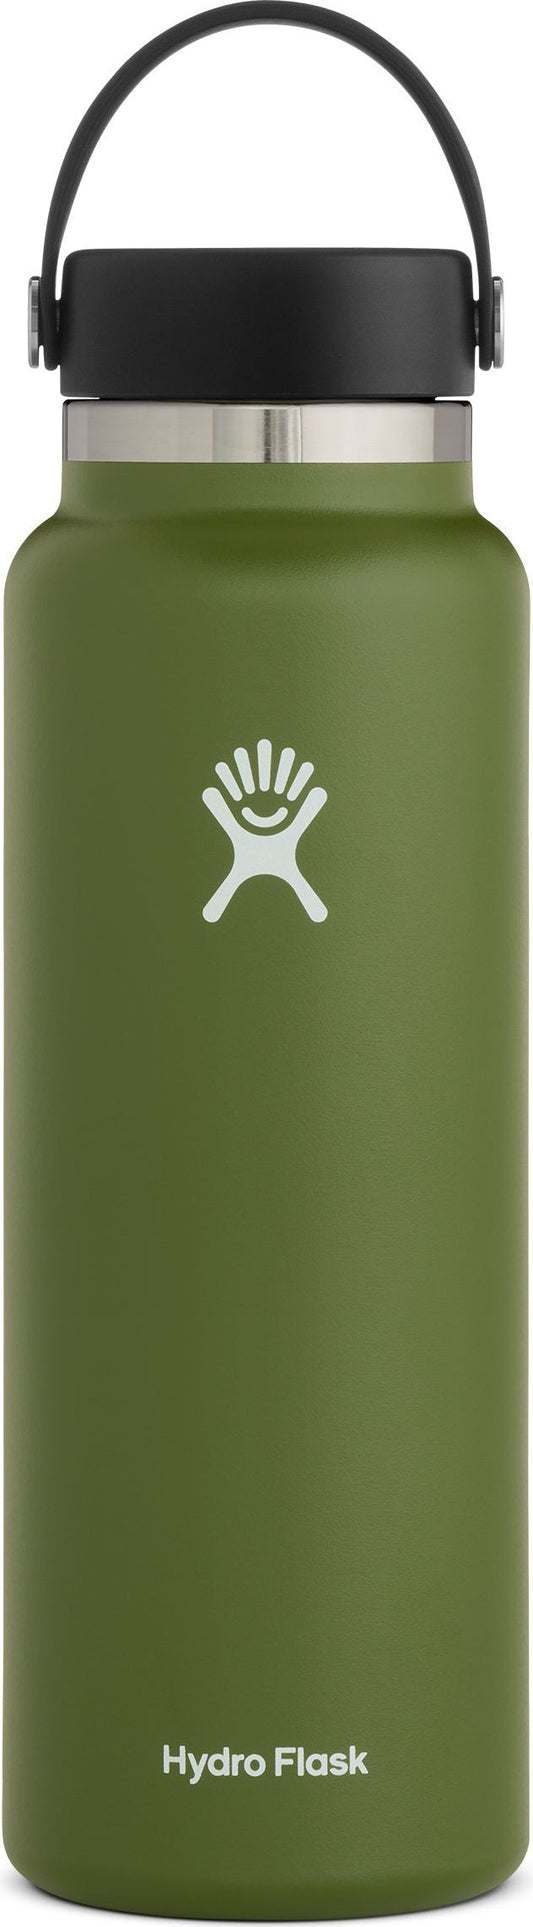 Hydro Flask 40 Oz Water Bottle in White - W40BTS110